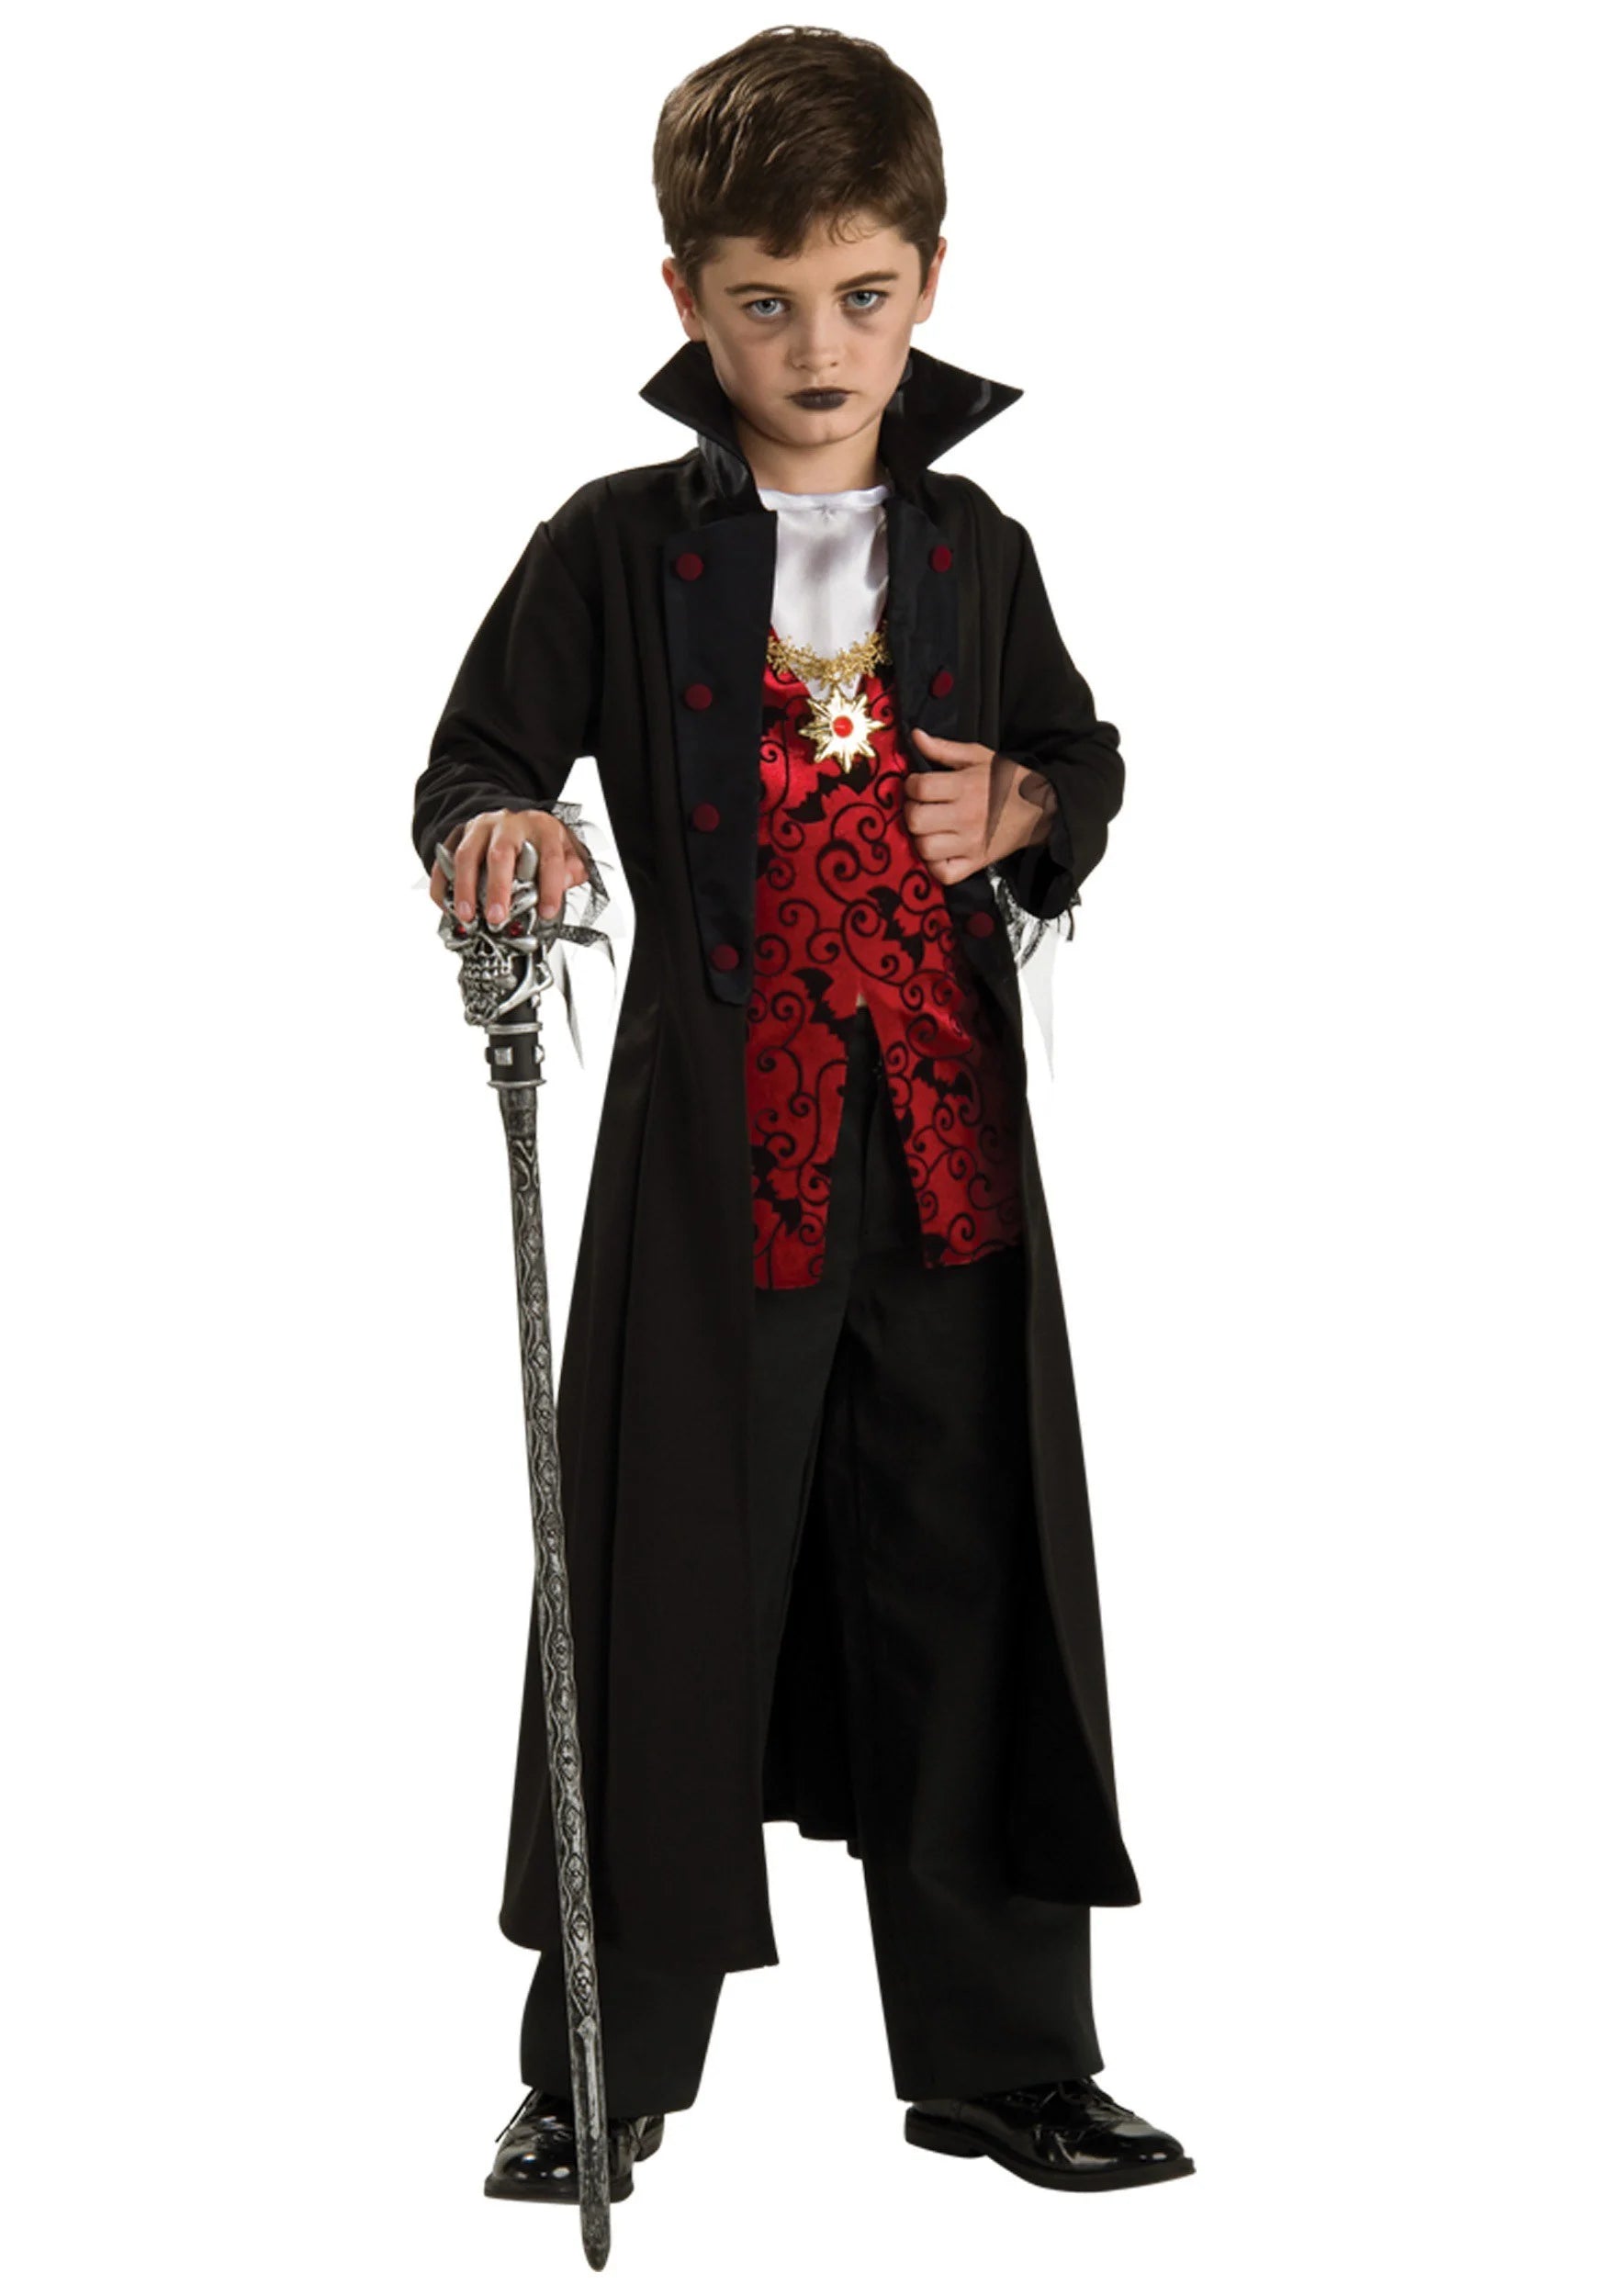 Royal Vampire Costume 5-7 Years